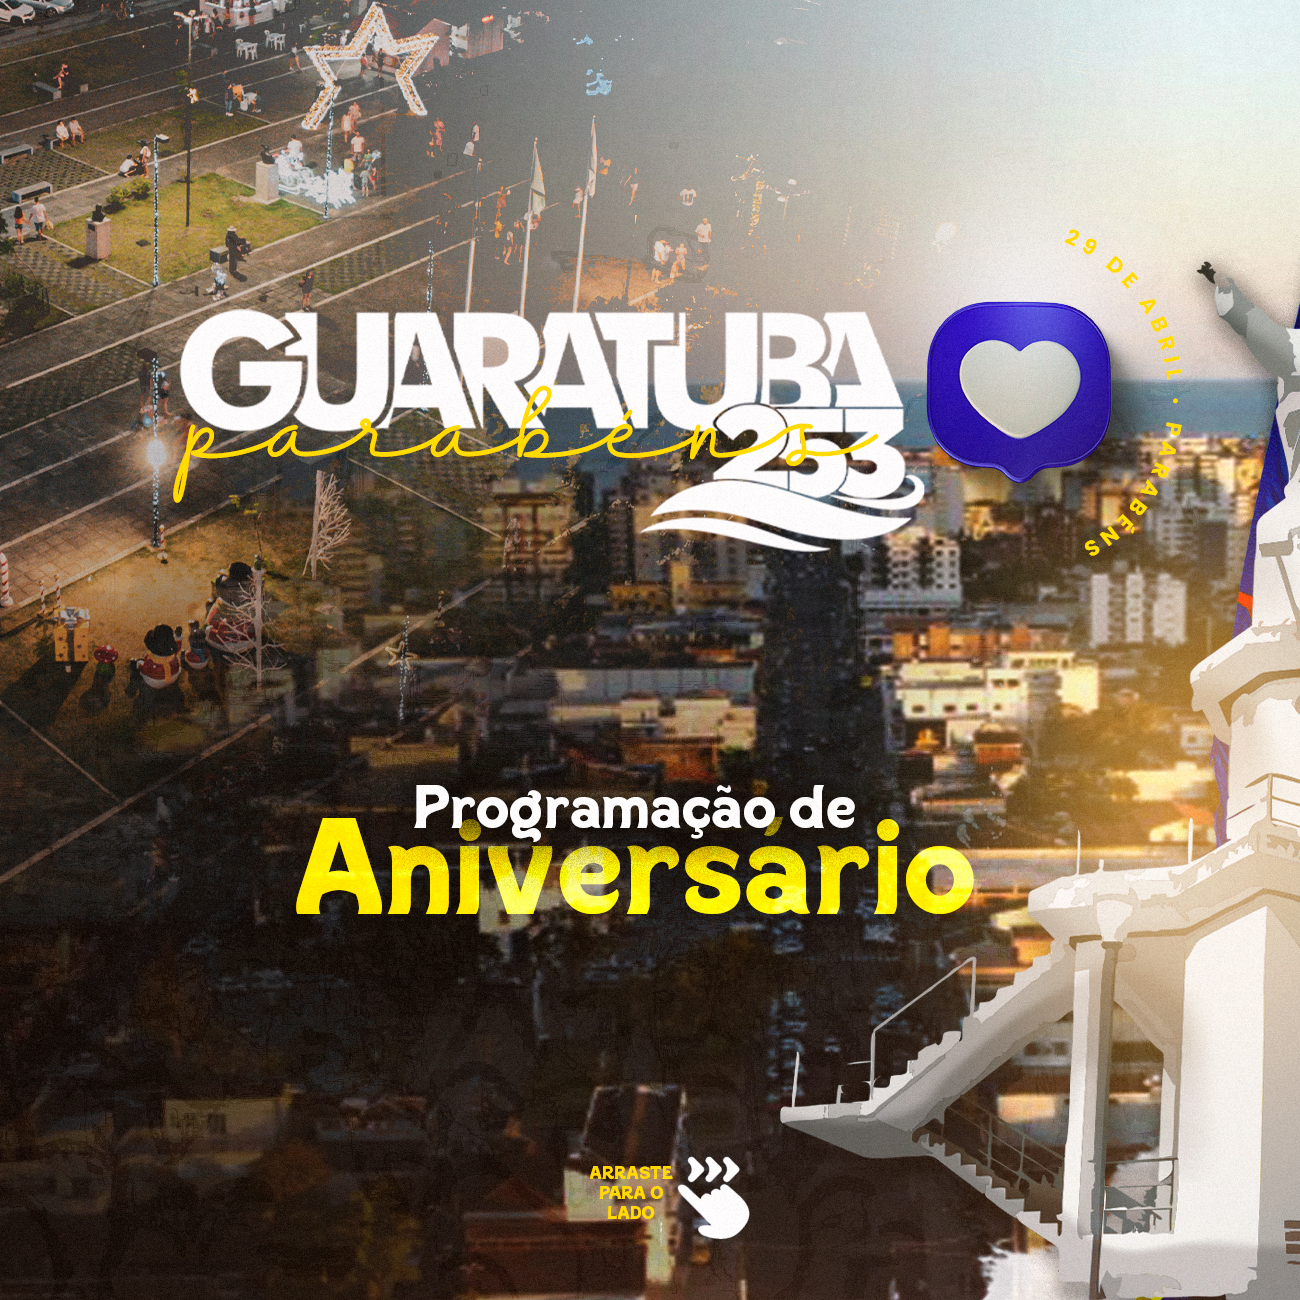 Celebre o Aniversário de Guaratuba: Descubra a Programação e os Detalhes da Comemoração de 253 Anos